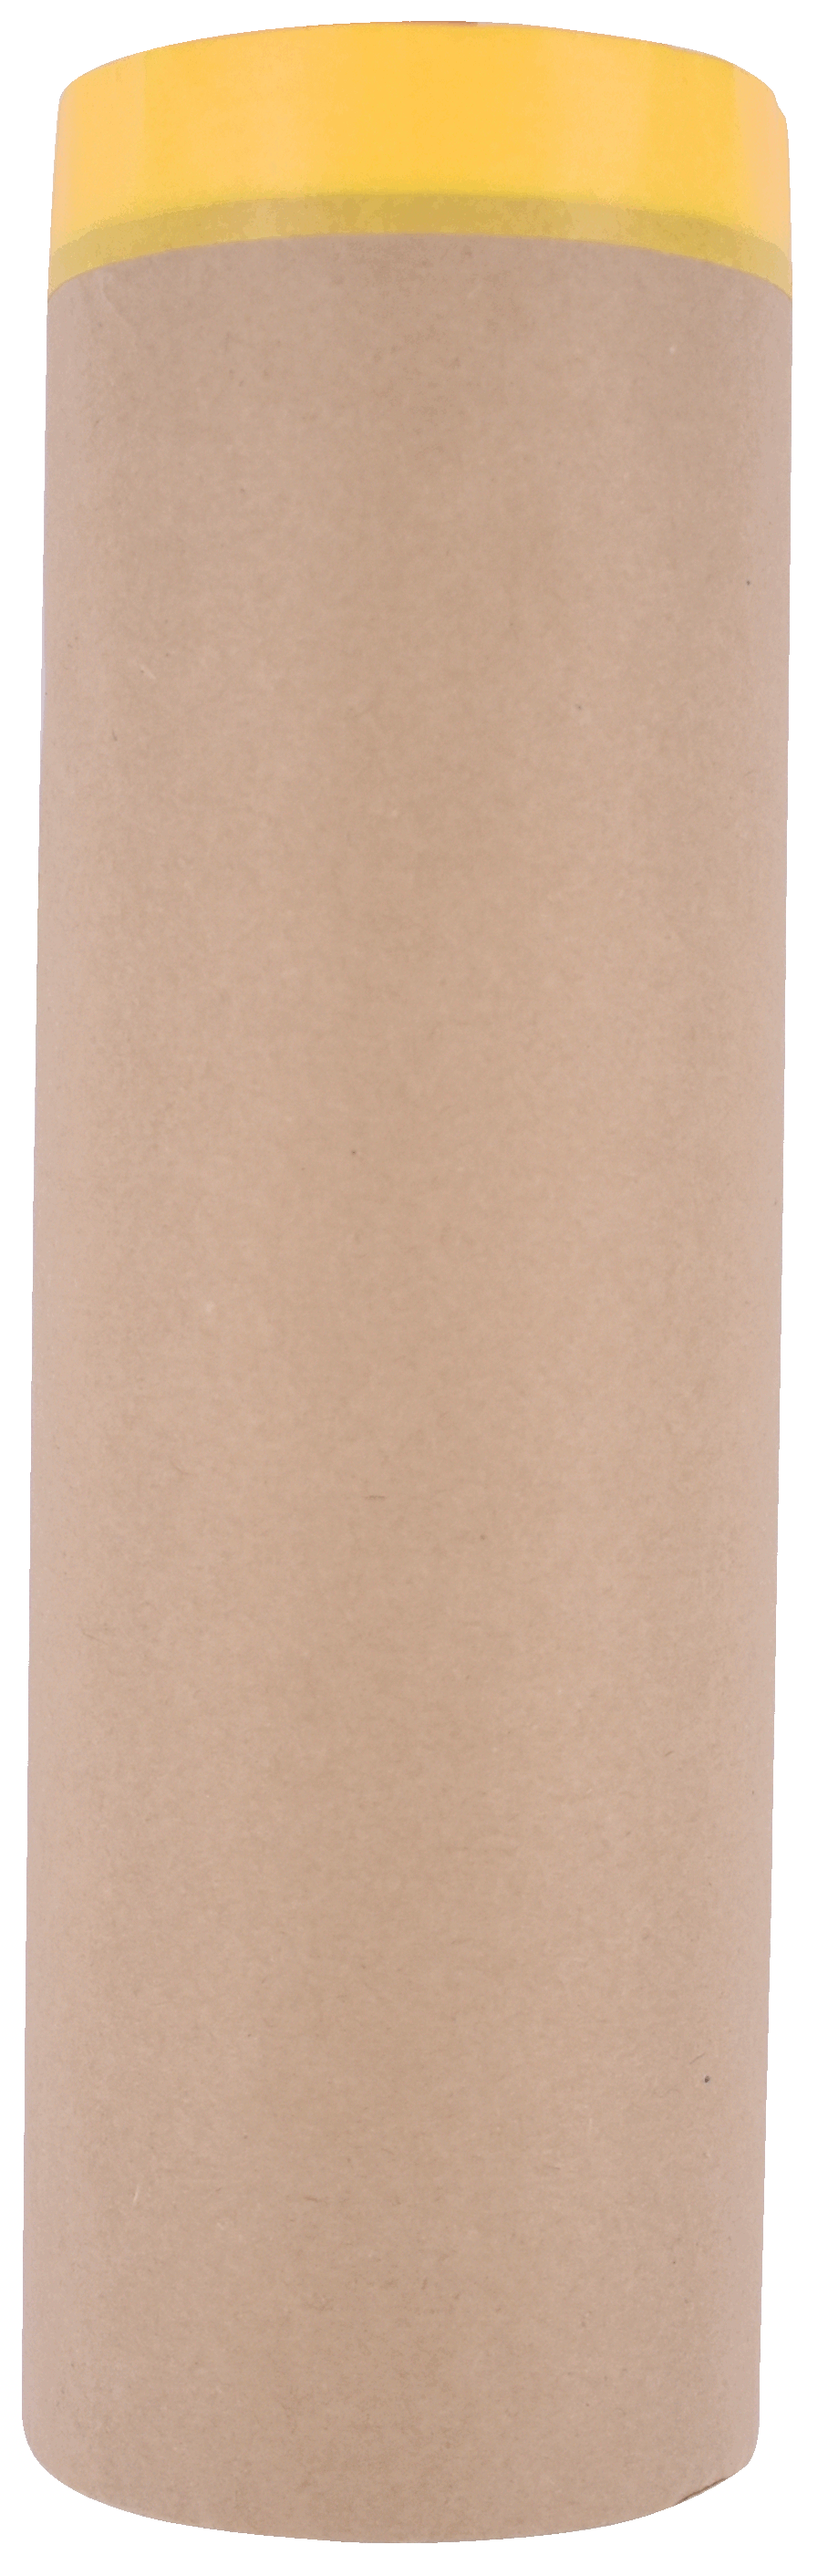 PRE-Taped Masking Paper Drop Sheet                                                                                                                                                                      